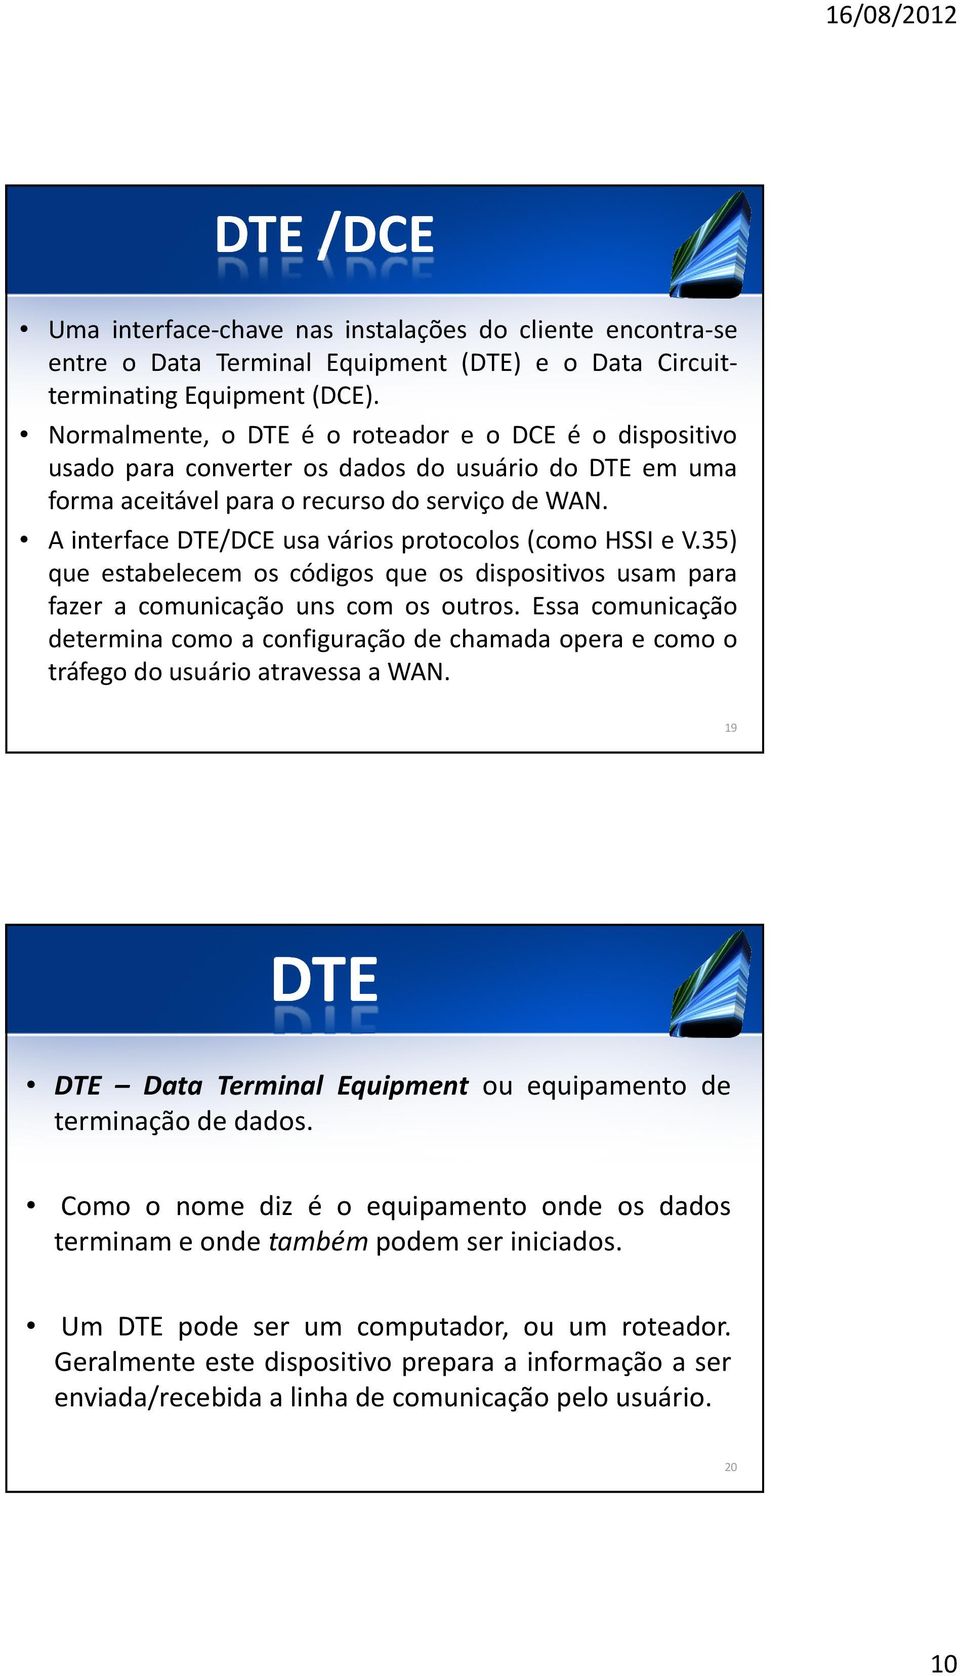 A interface DTE/DCE usa vários protocolos (como HSSI e V.35) que estabelecem os códigos que os dispositivos usam para fazer a comunicação uns com os outros.